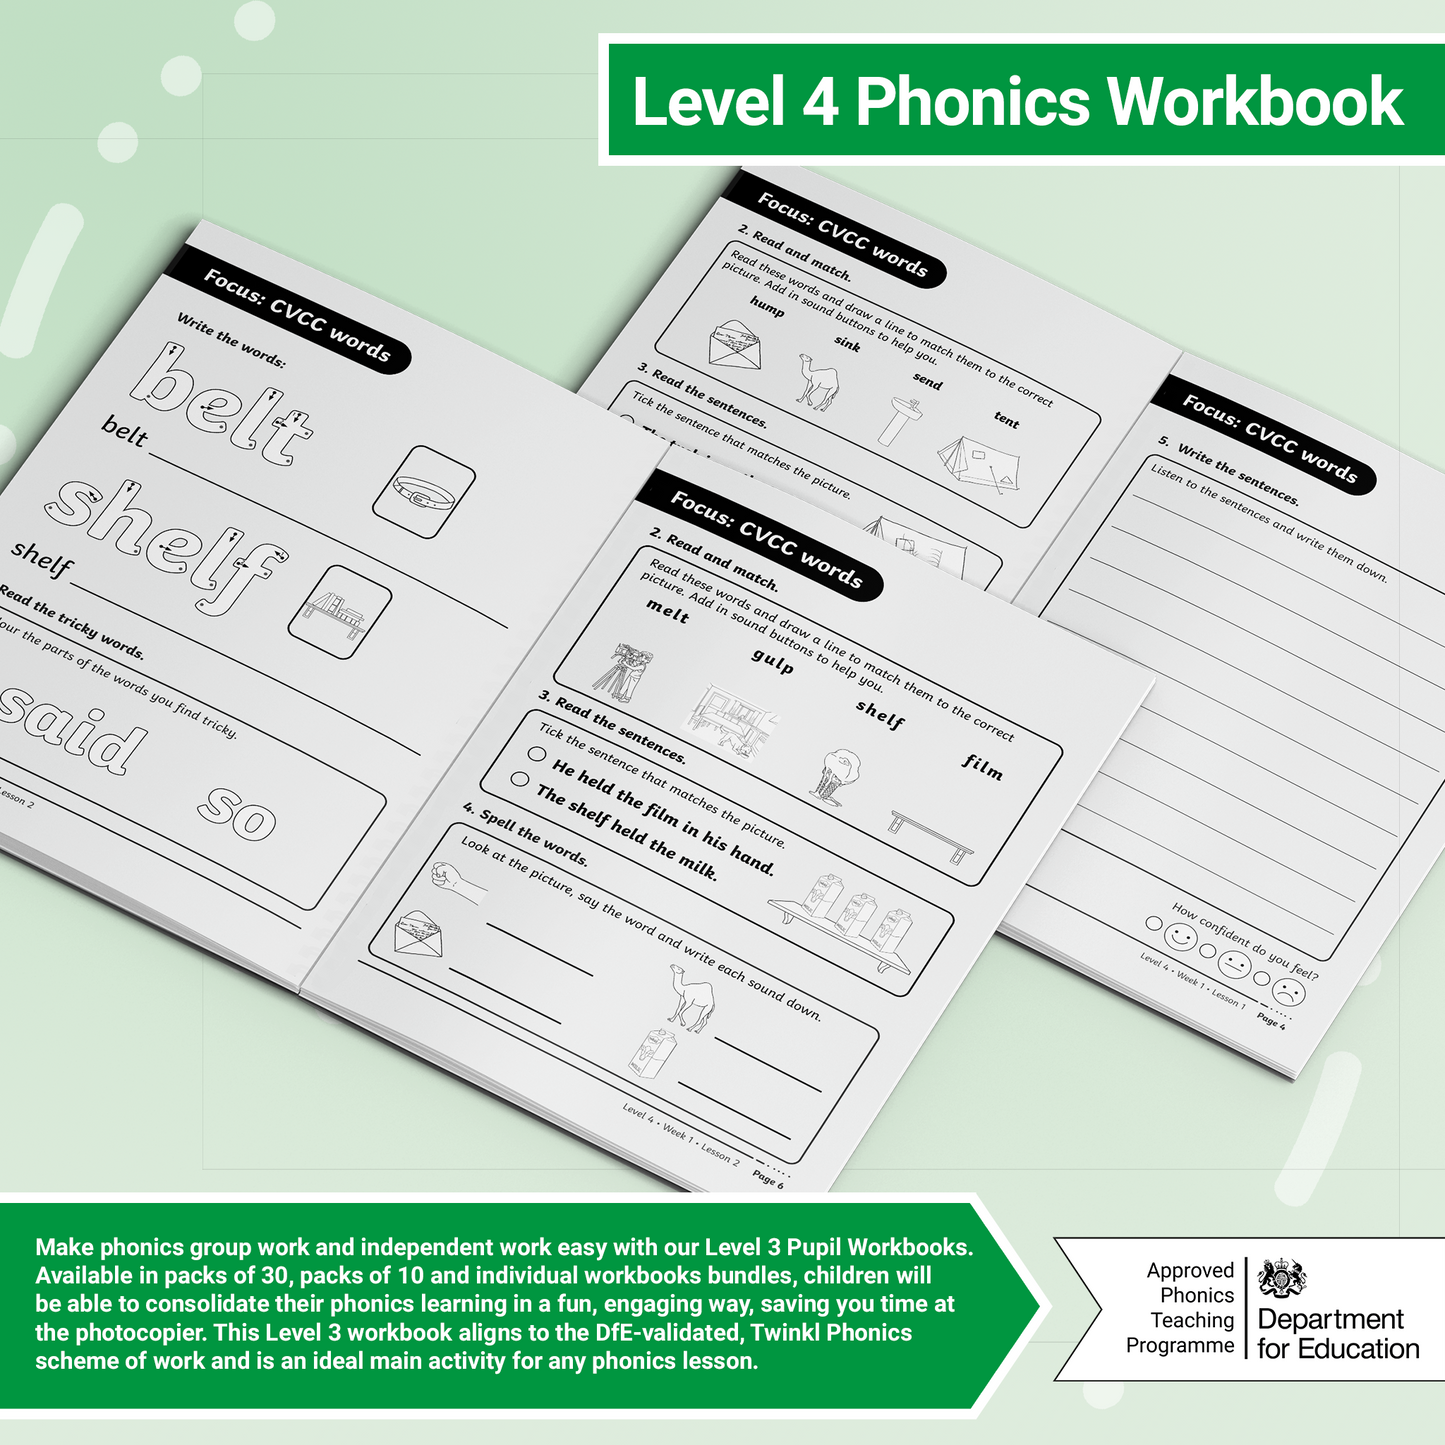 Twinkl Phonics – Level 4 Workbook